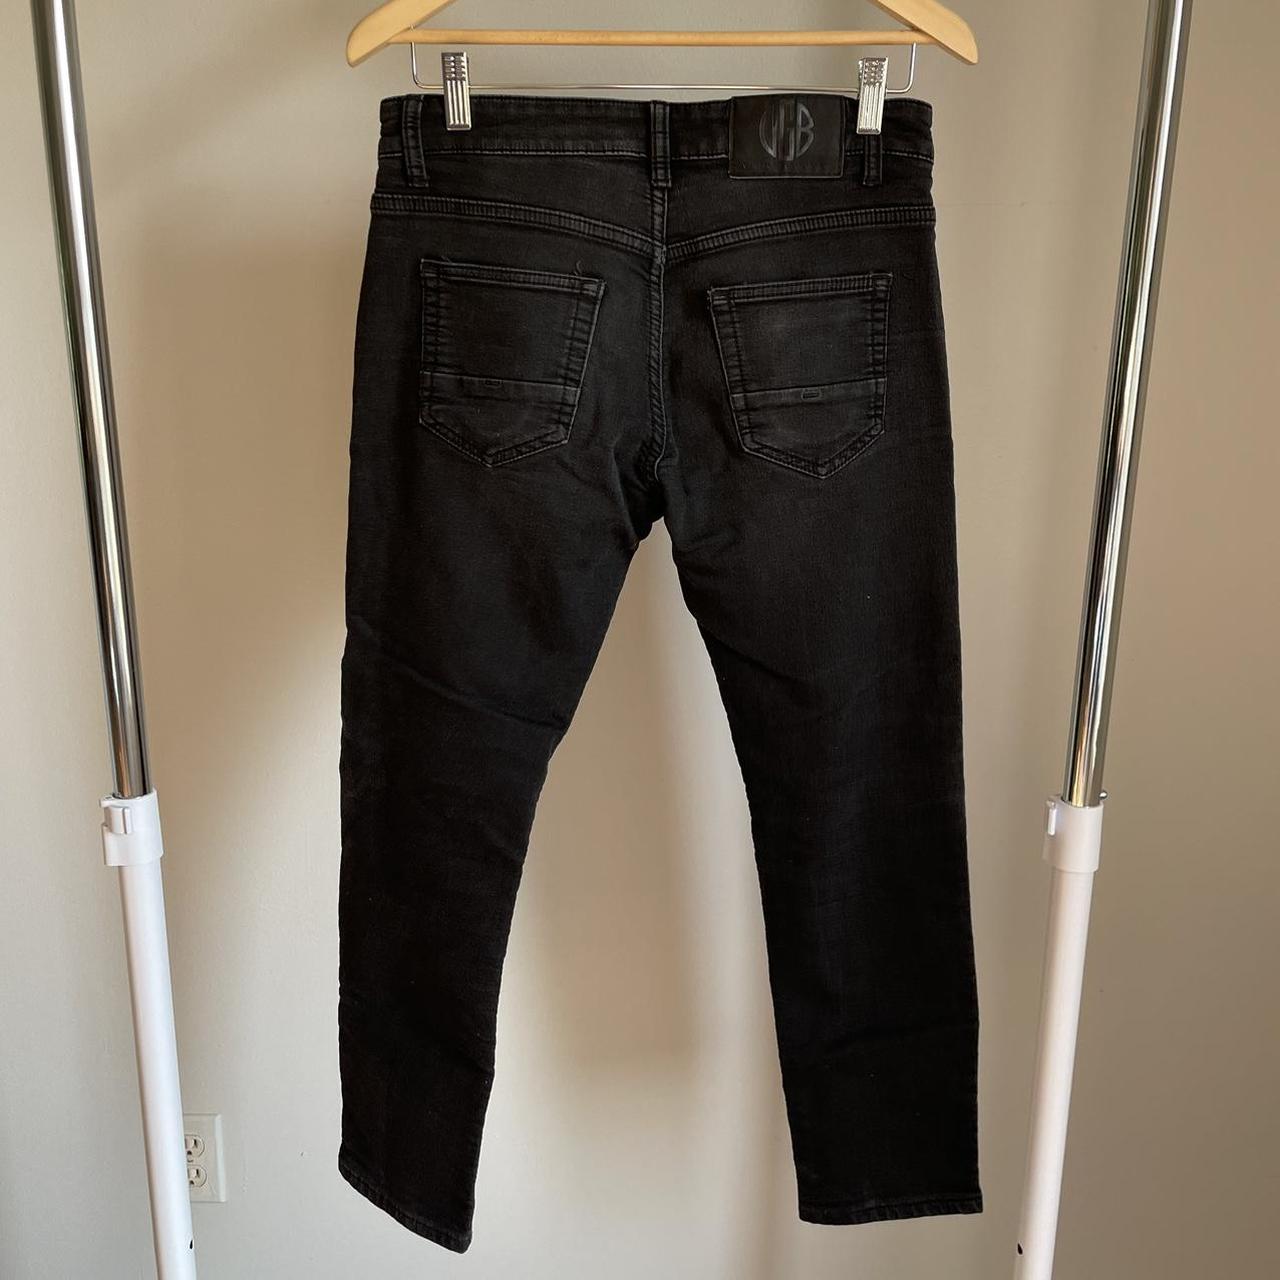 Earl Jean Womens Jeans Size 0 Long Skinny Black - Depop